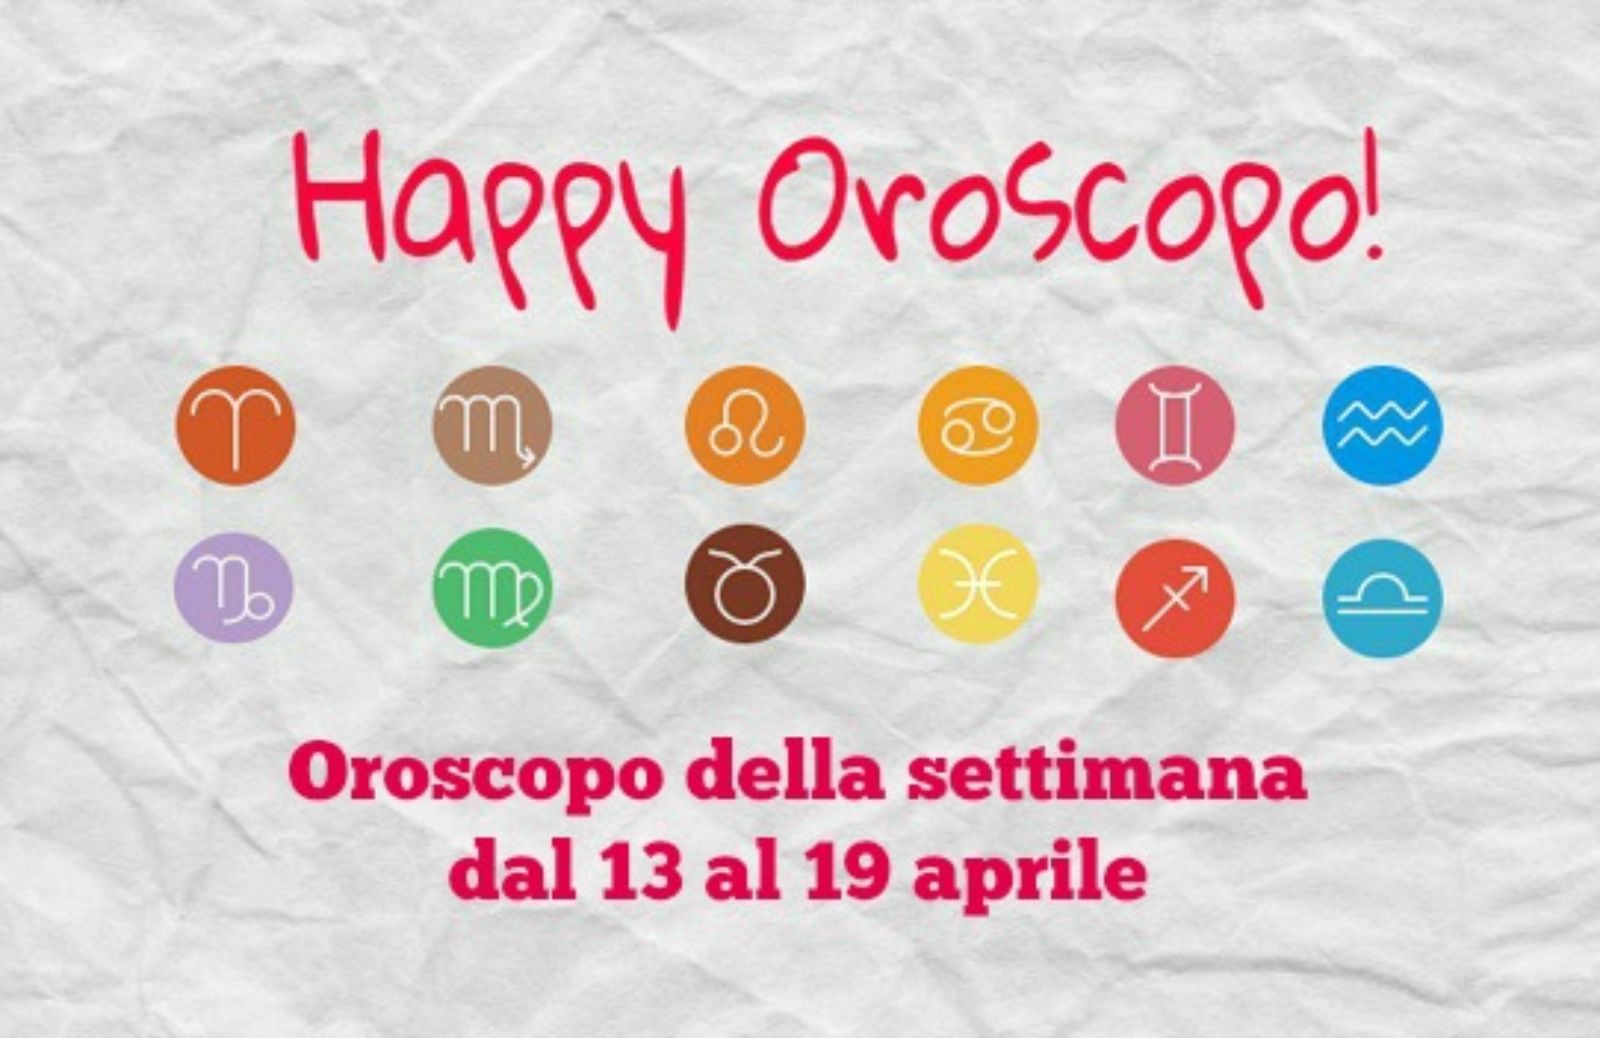 Happy Oroscopo della settimana: cosa dicono le stelle dal 13 al 19 aprile